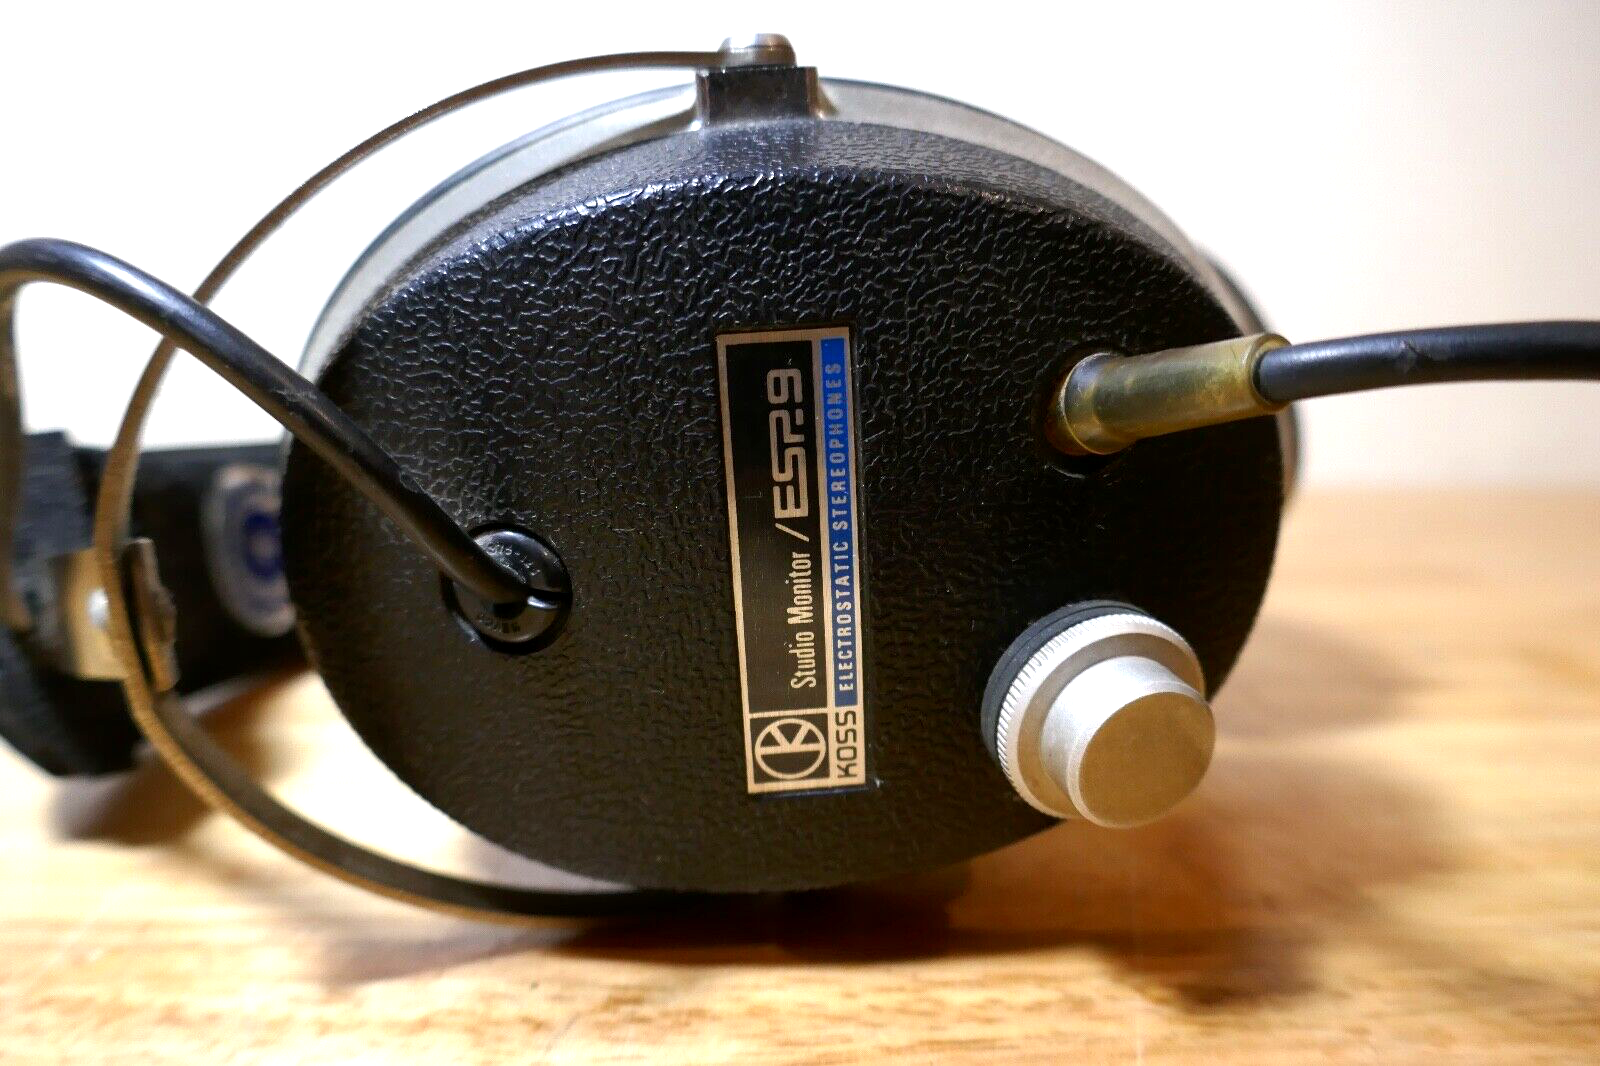 préamplificateur casque Koss /e.9 vintage occasion headphones